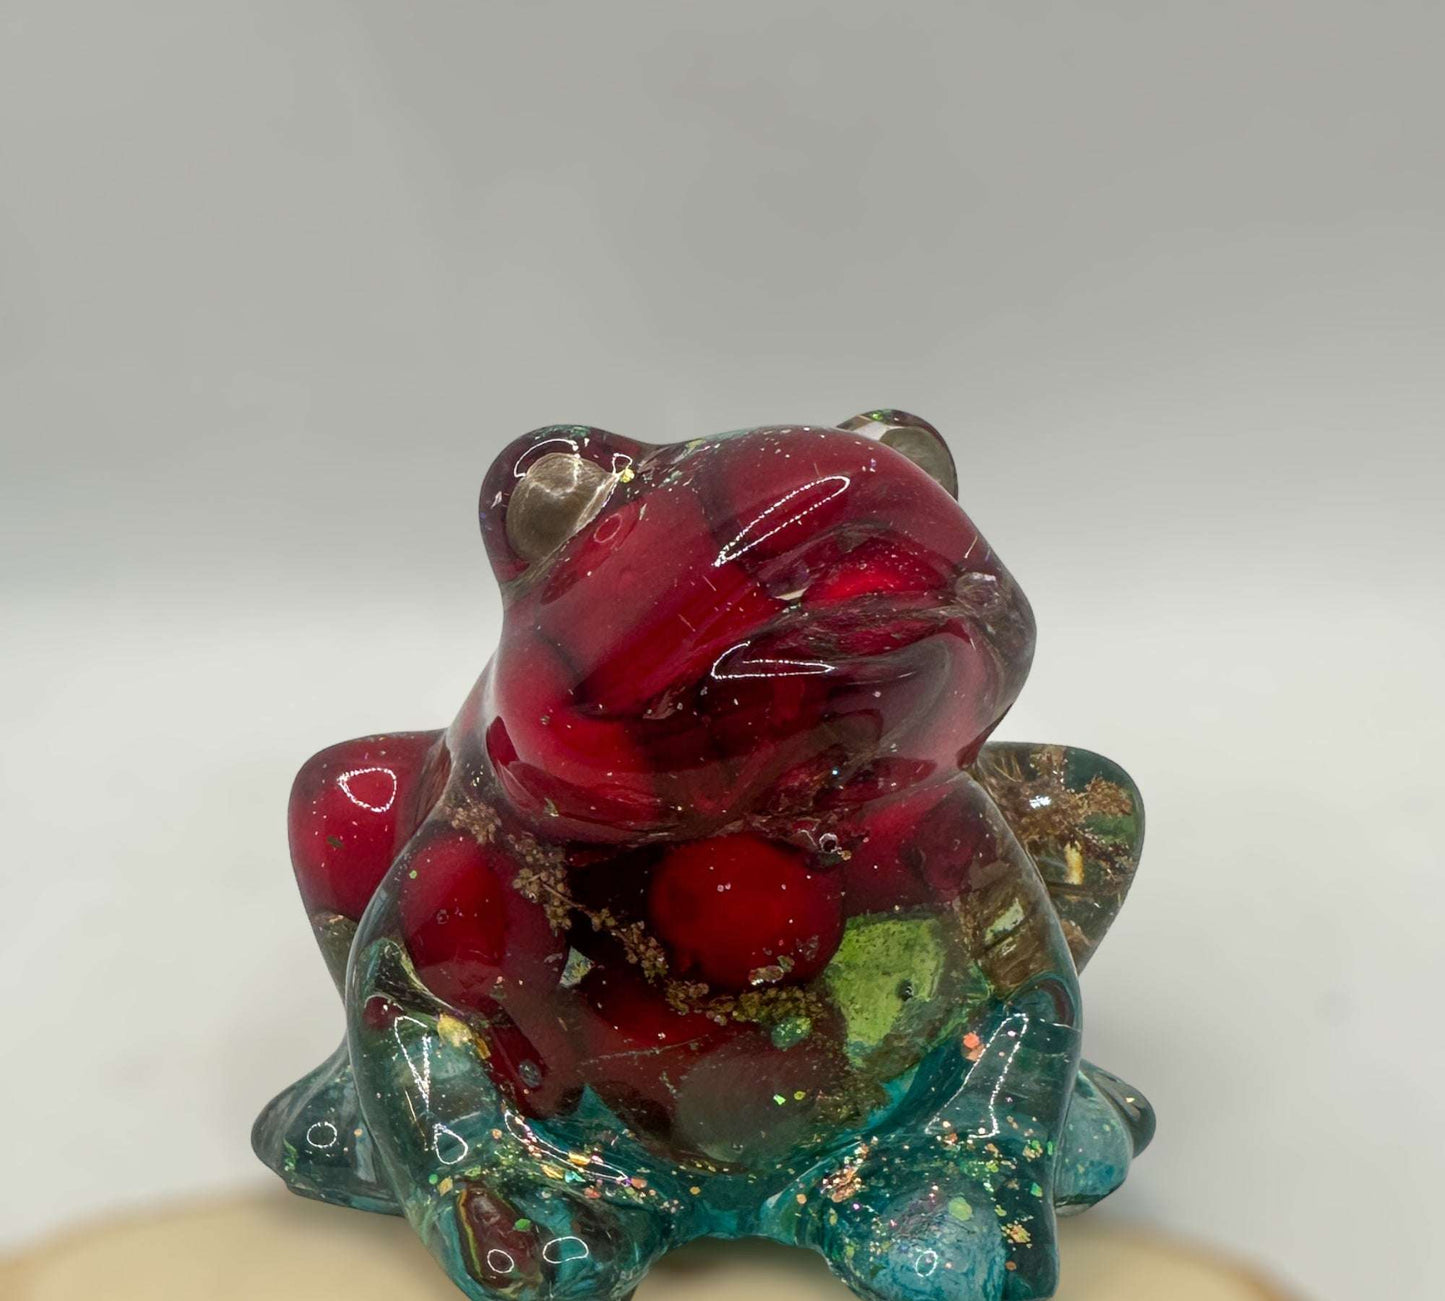 Whimsical Frog Sculpture - Handmade Resin Frog - Berry Hopper